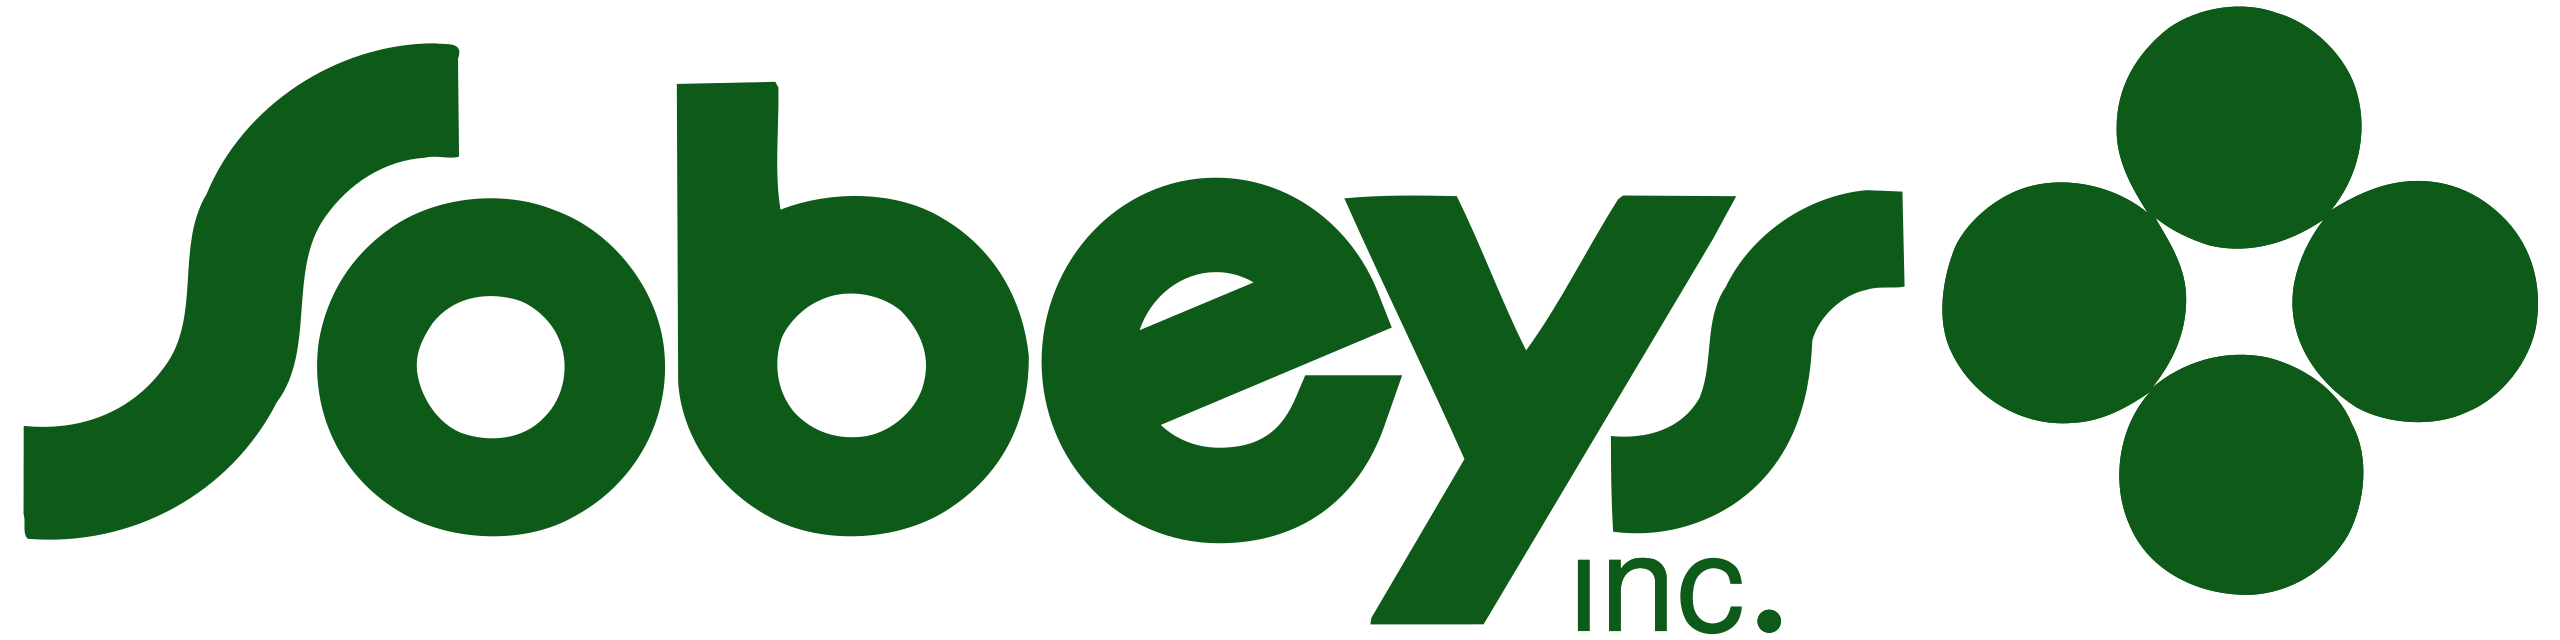 Sobey's logo